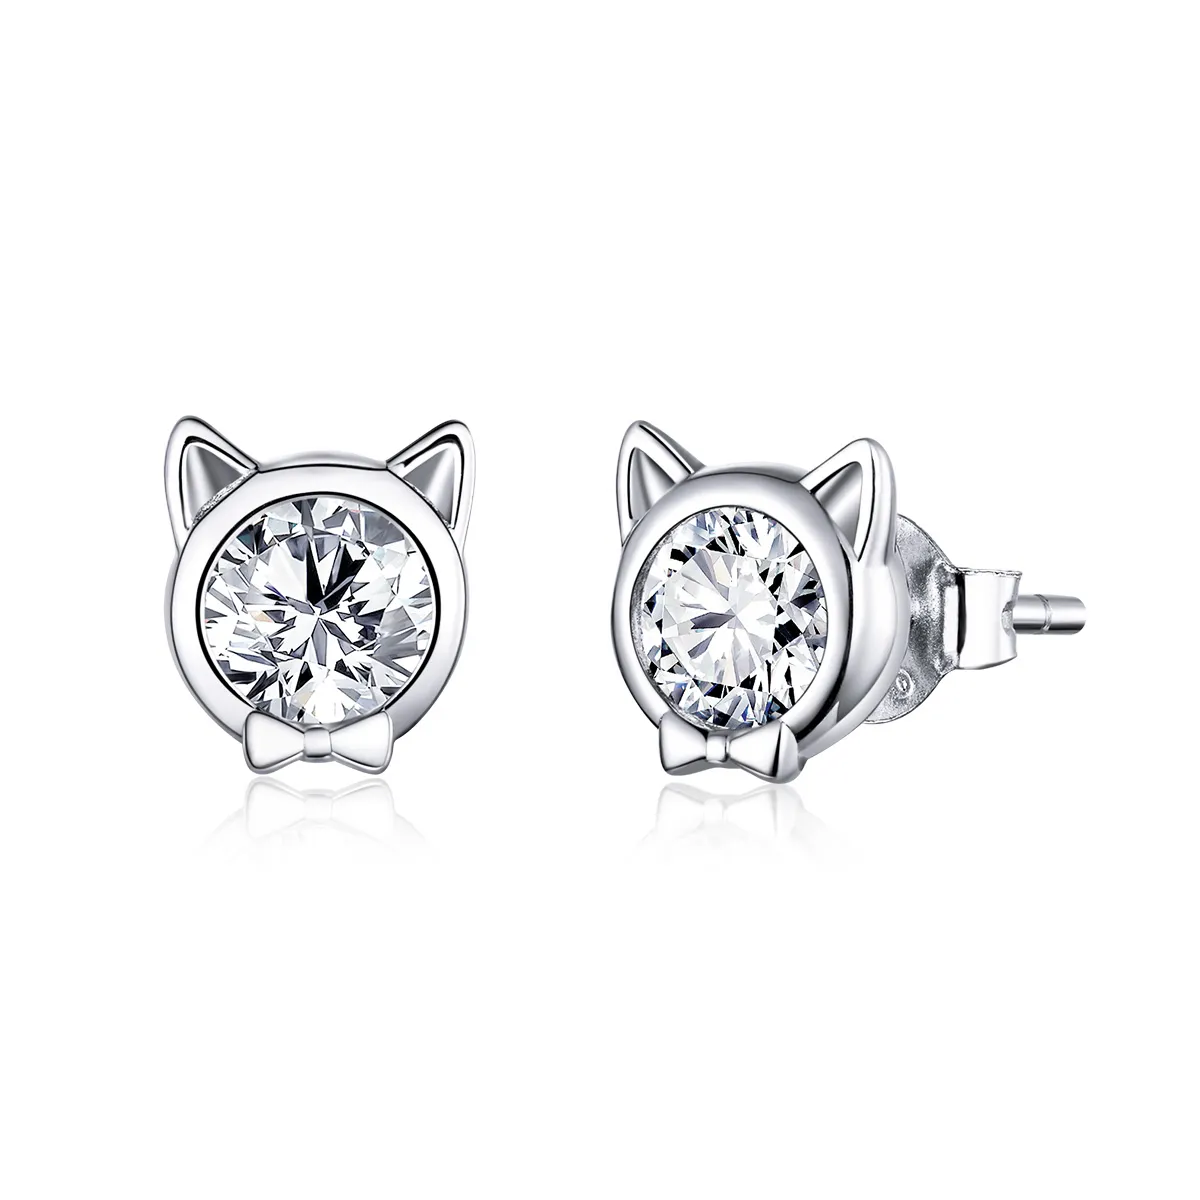 Pandora Style Silver Cute Cat Stud Earrings - SCE899